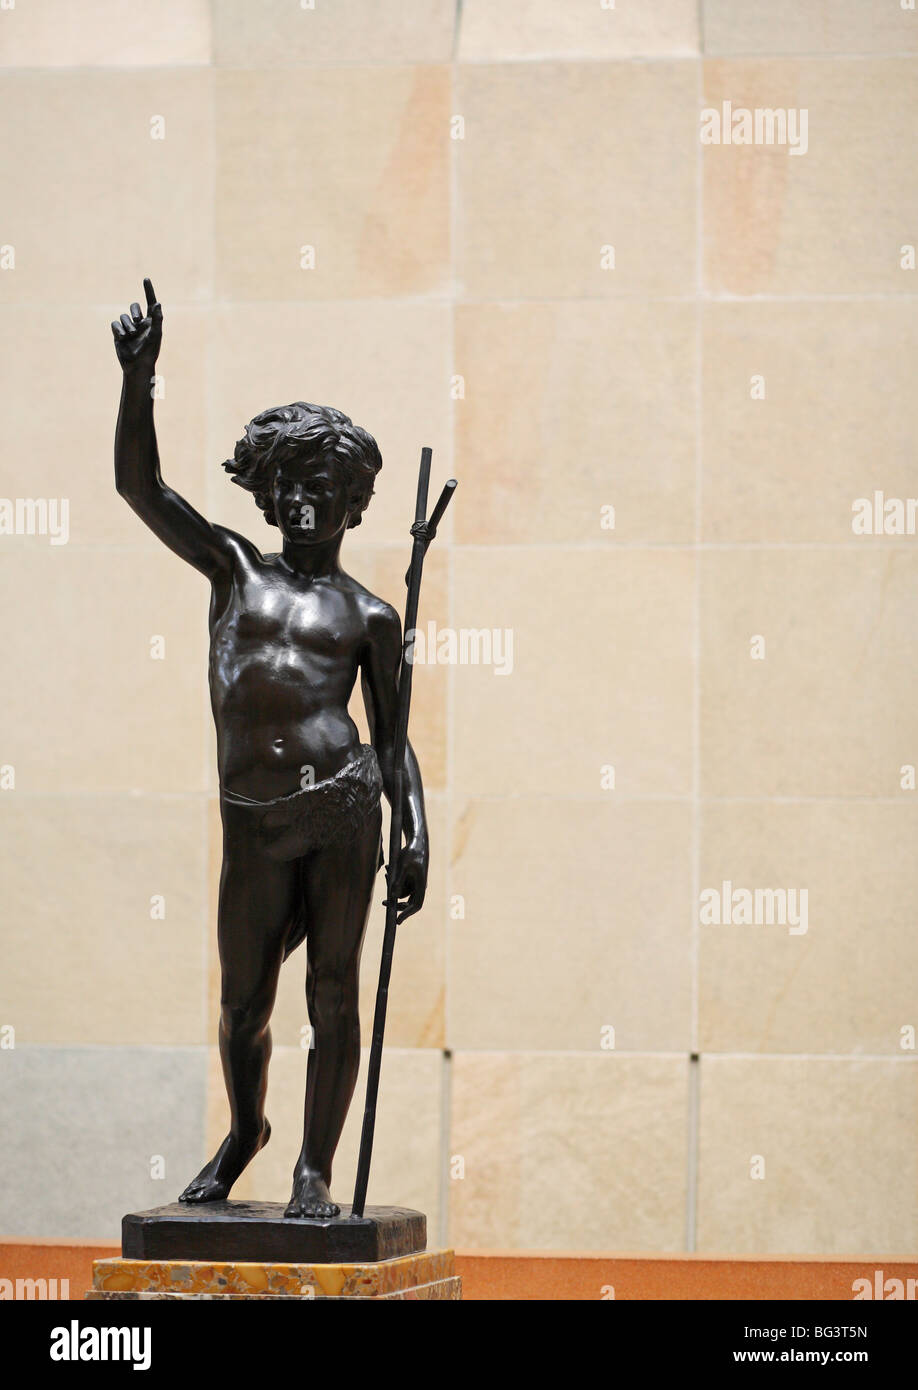 Saint Jean-Baptiste enfant bronze sculpture by Paul Dubois , Musée d'Orsay (Orsay Museum),  Paris, France Stock Photo